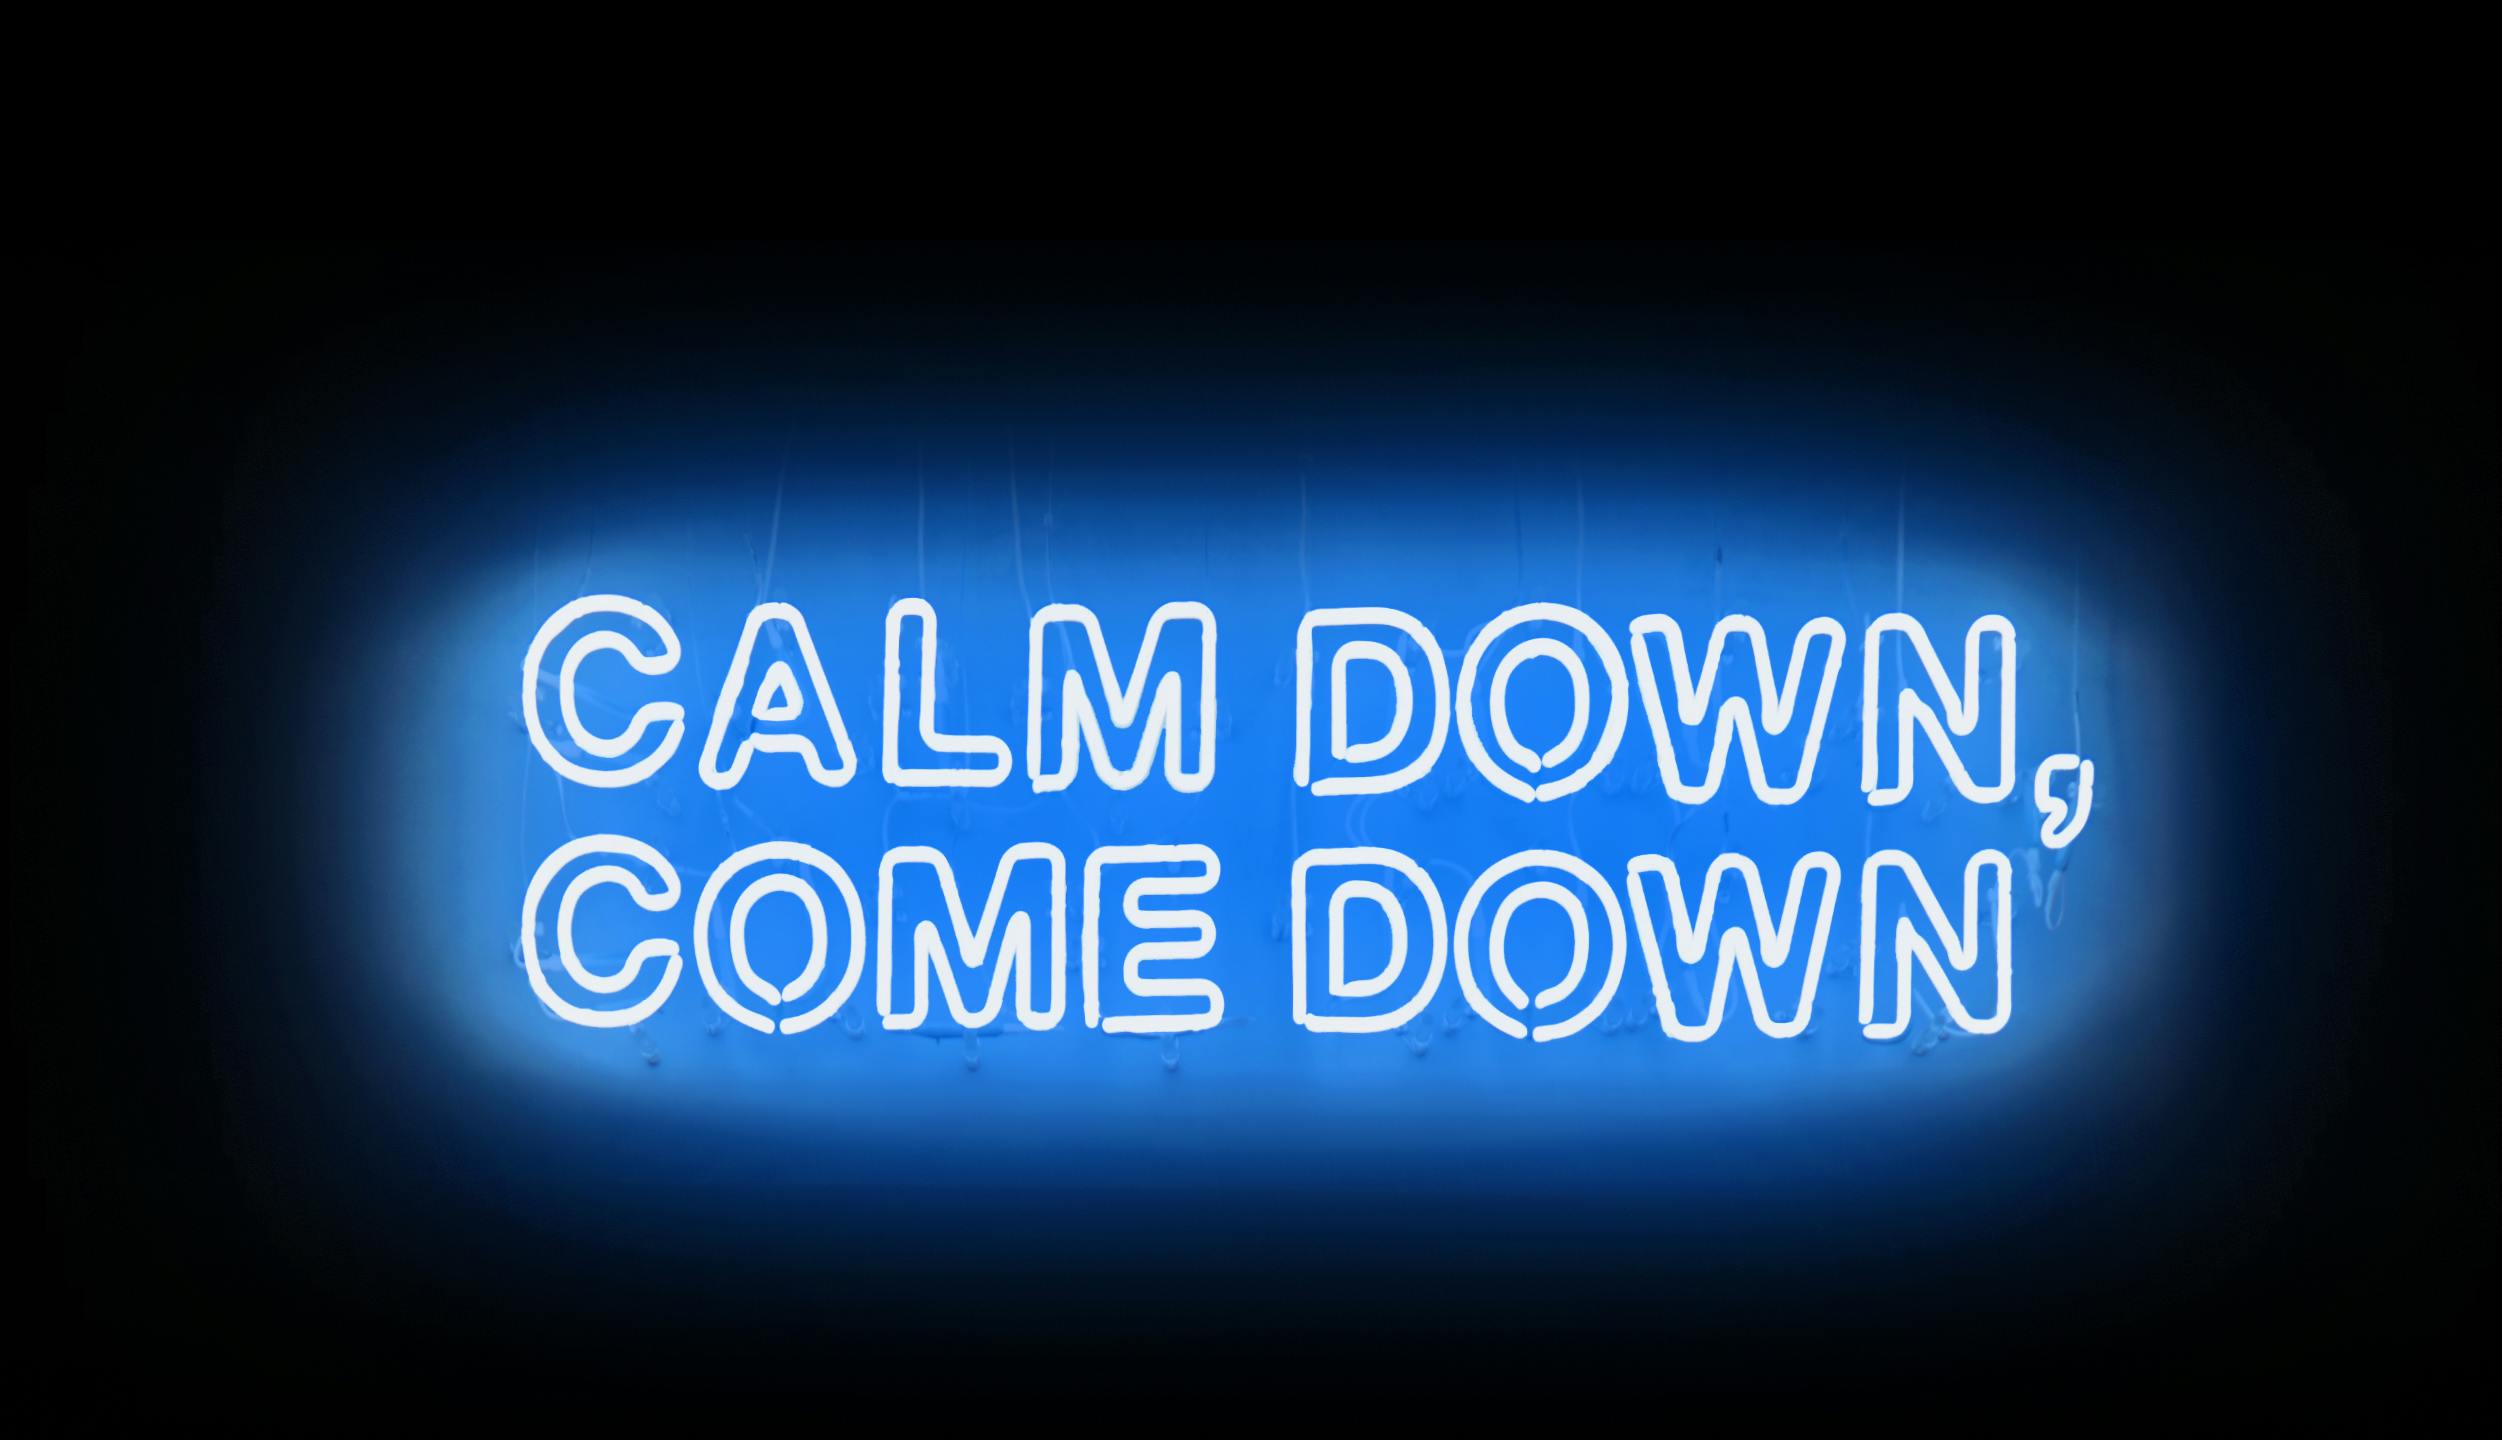 Calm Down, Come Down